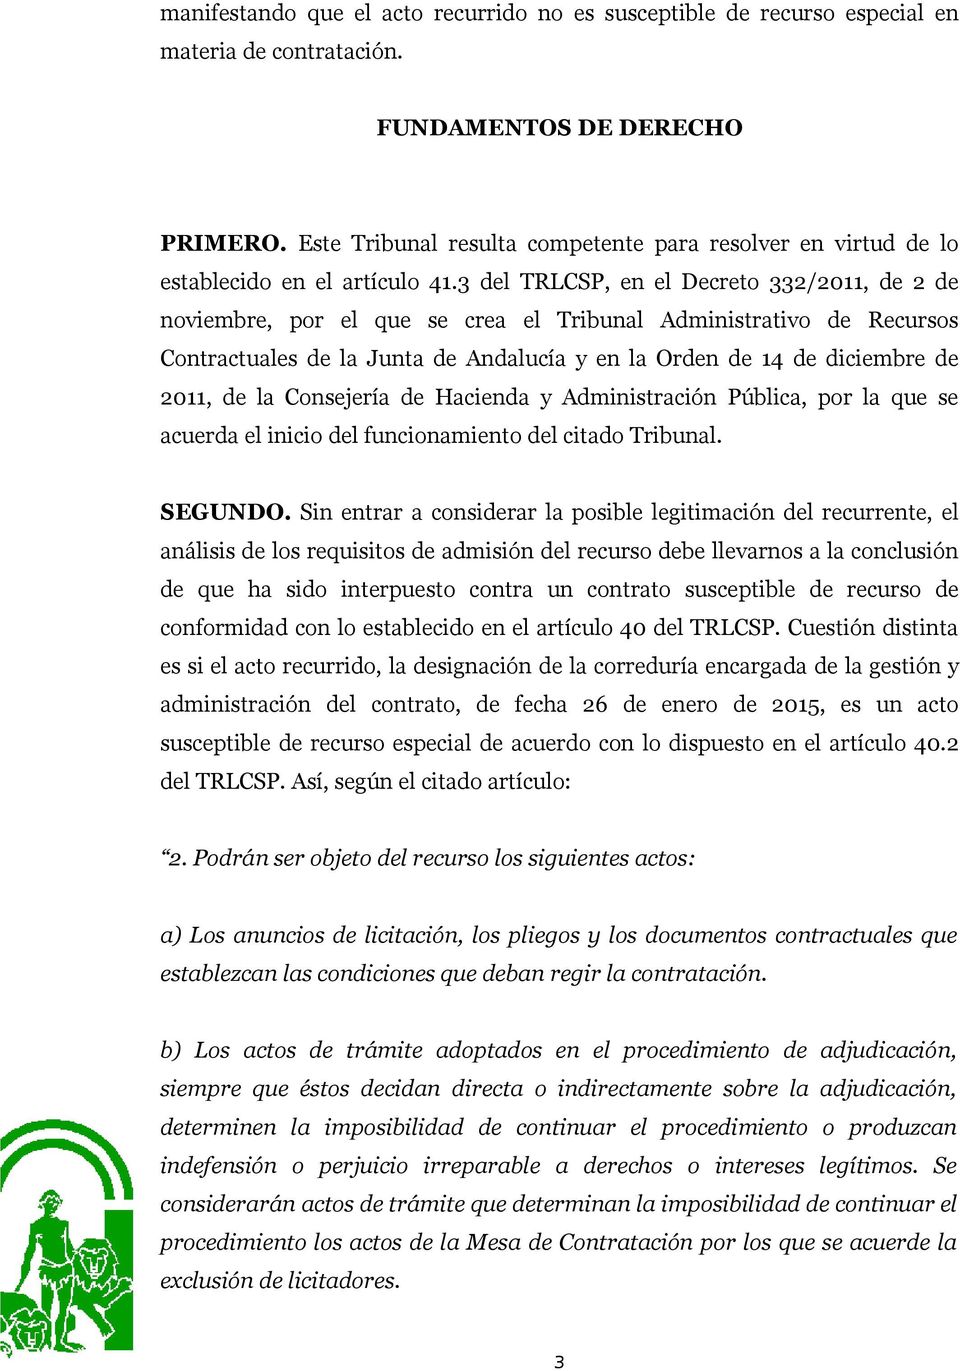 3 del TRLCSP, en el Decreto 332/2011, de 2 de noviembre, por el que se crea el Tribunal Administrativo de Recursos Contractuales de la Junta de Andalucía y en la Orden de 14 de diciembre de 2011, de